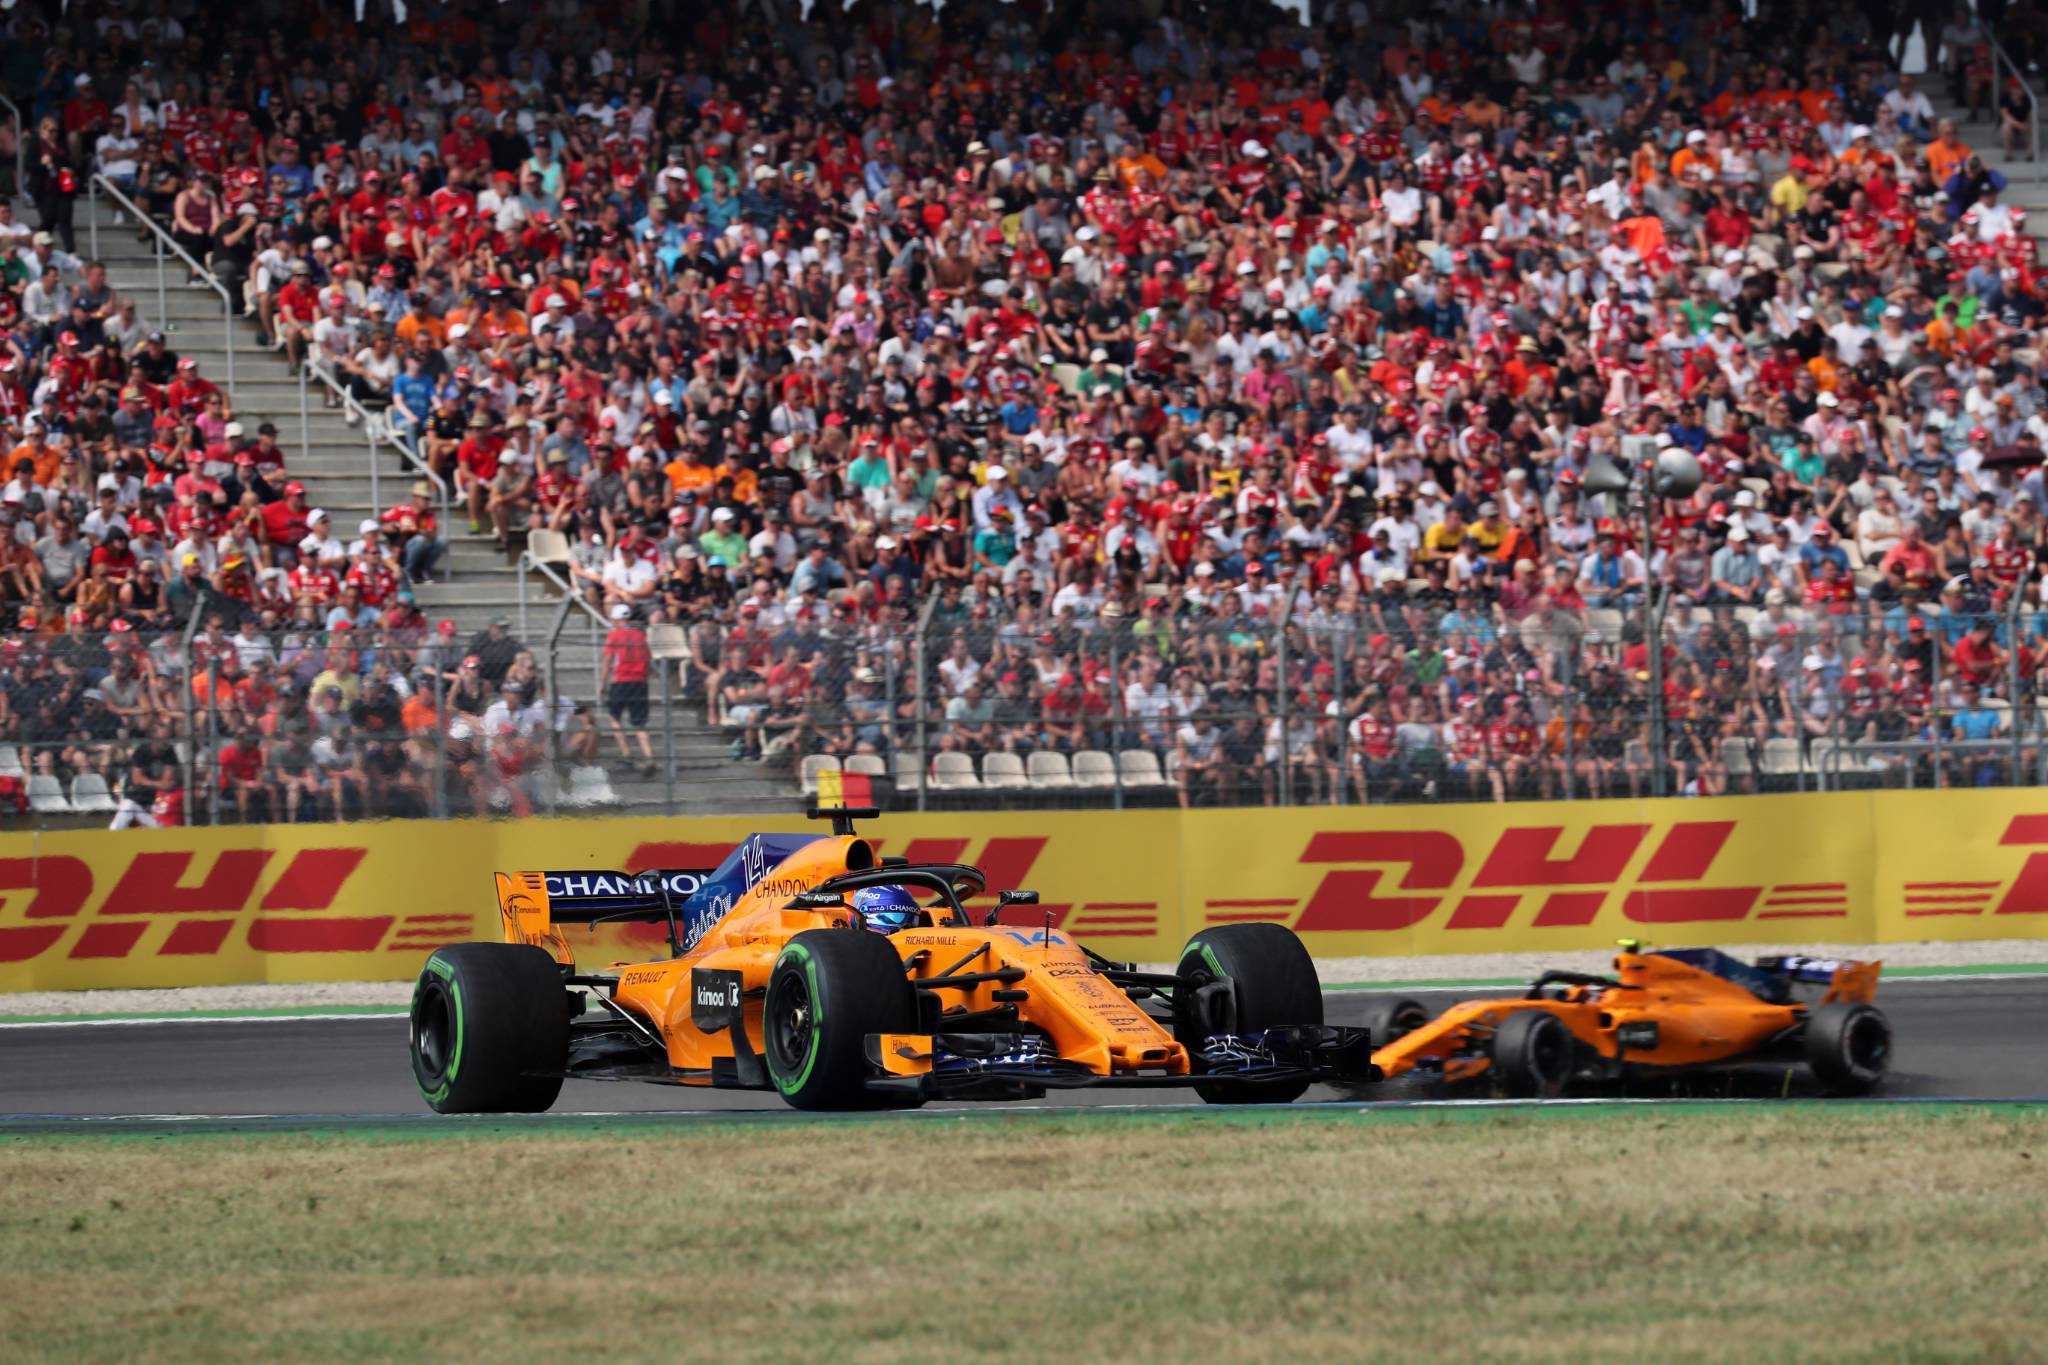 22.07.2018 - Race, Fernando Alonso (ESP) McLaren MCL33 and Stoffel Vandoorne (BEL) McLaren MCL33 